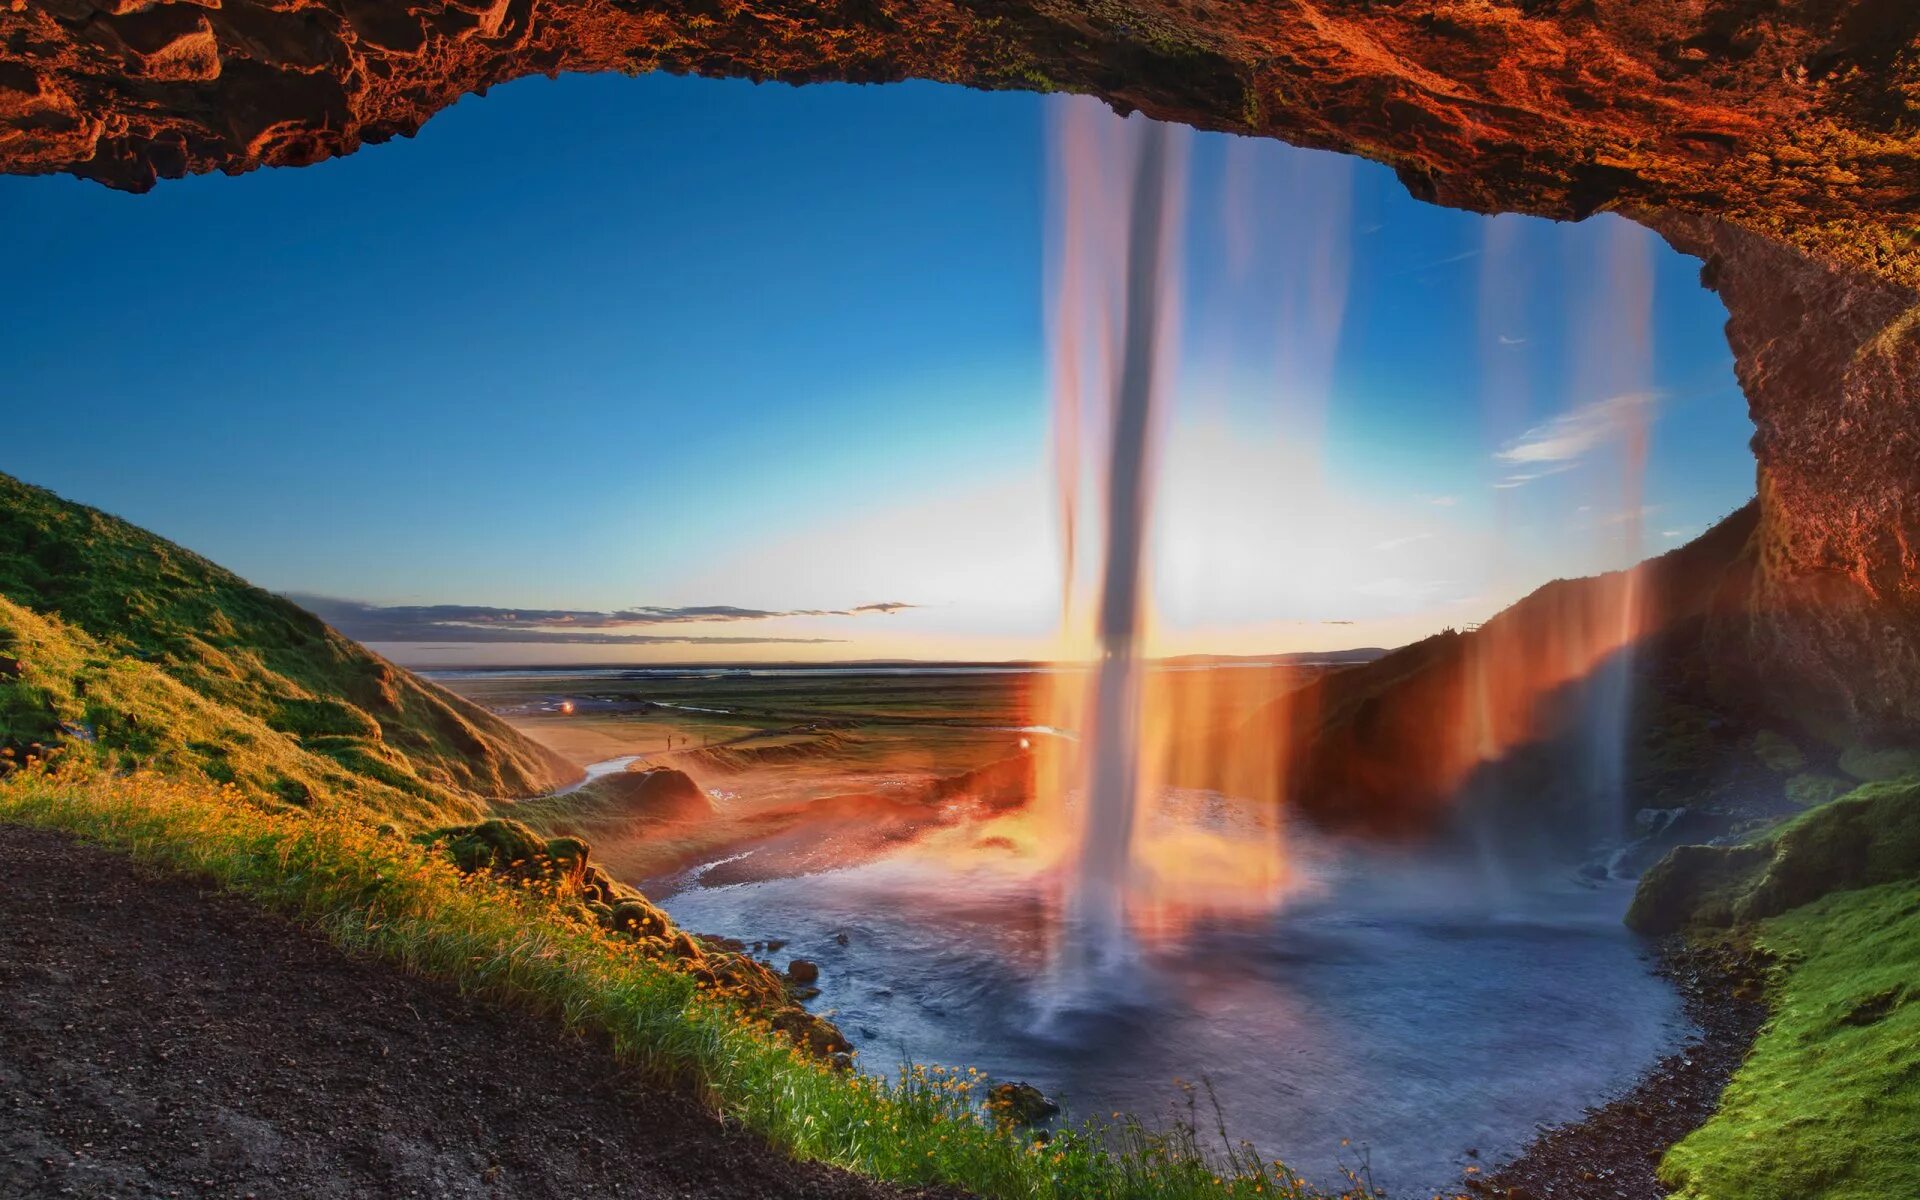 Красивые картинки на обои. Водопад Сельяландфосс, Исландия. Водопад Годафосс, Исландия. Сельяландсфосс Долина Исландия. Сельяландсфосс высота.